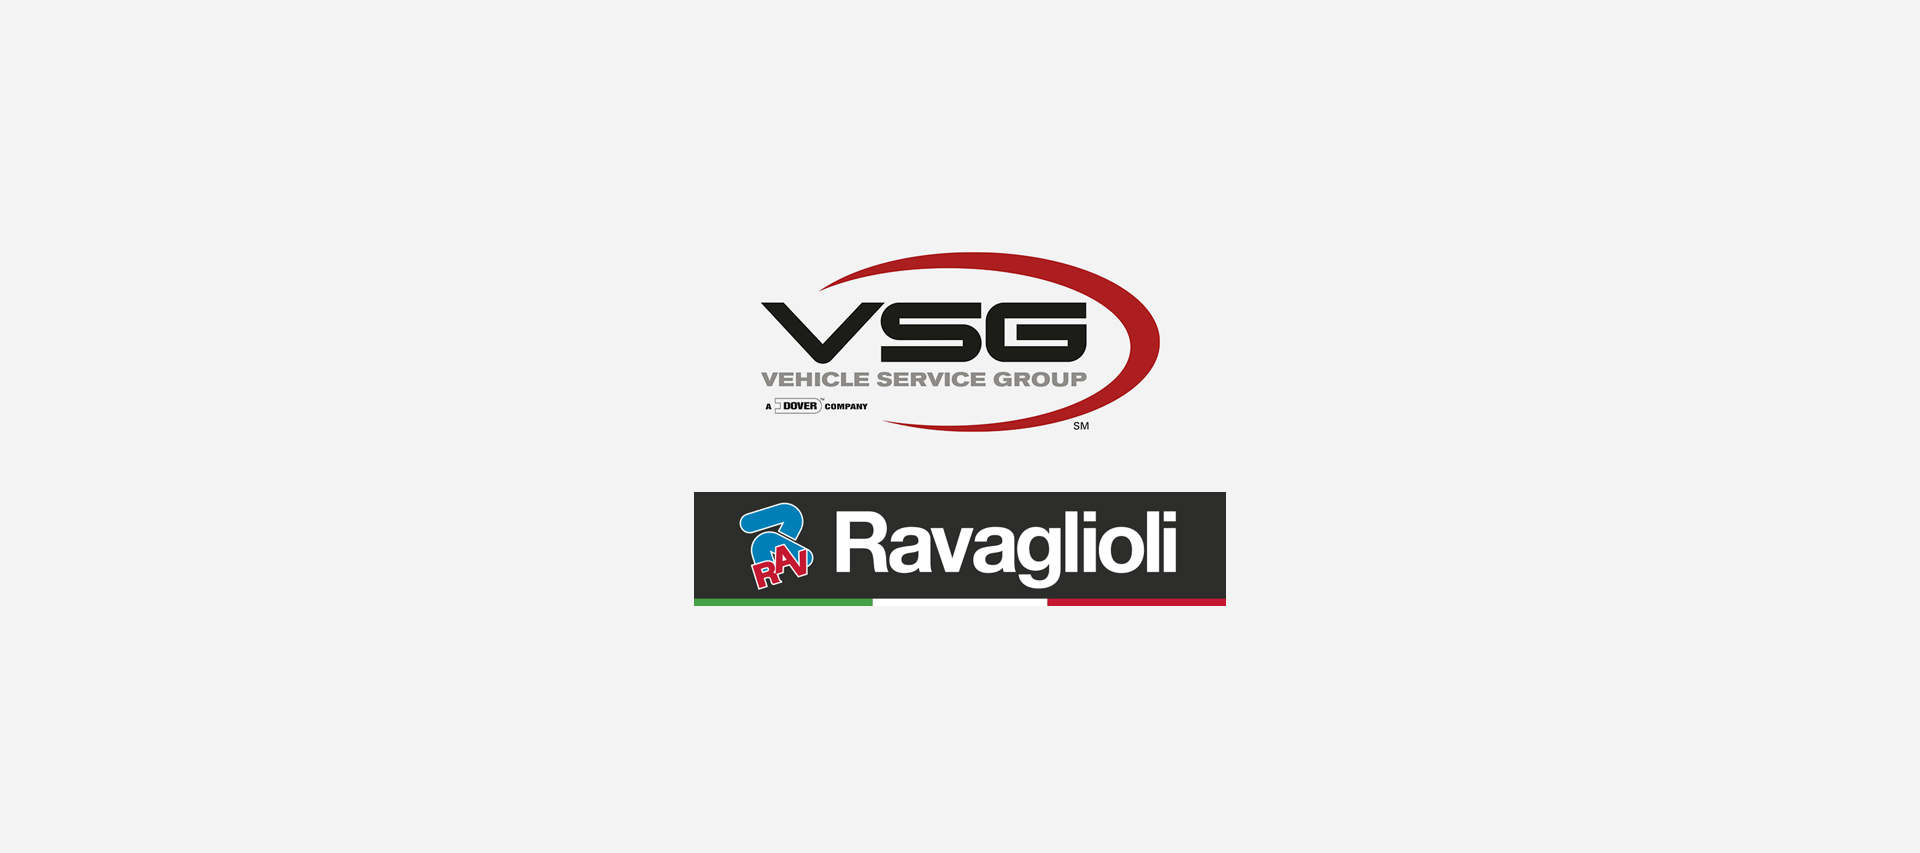 Die Vehicle Service Group erwirbt die Ravaglioli S.p.A. Group